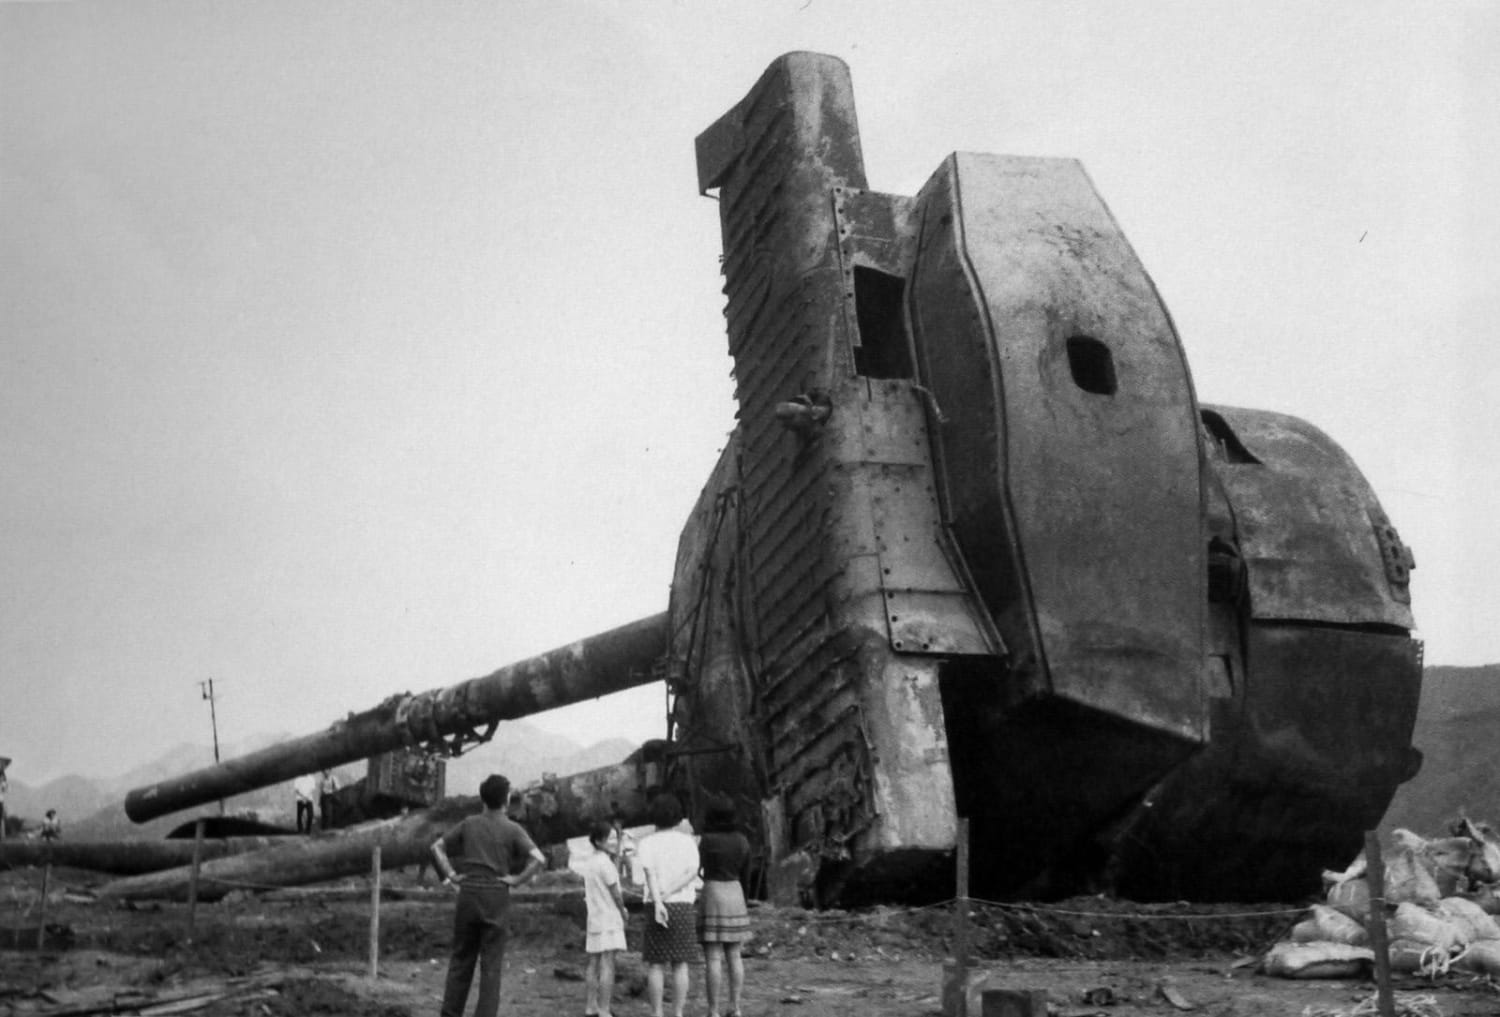 Salvaged turret from the Japanese battleship Mutsu, Suuoshima, Japan, 1970